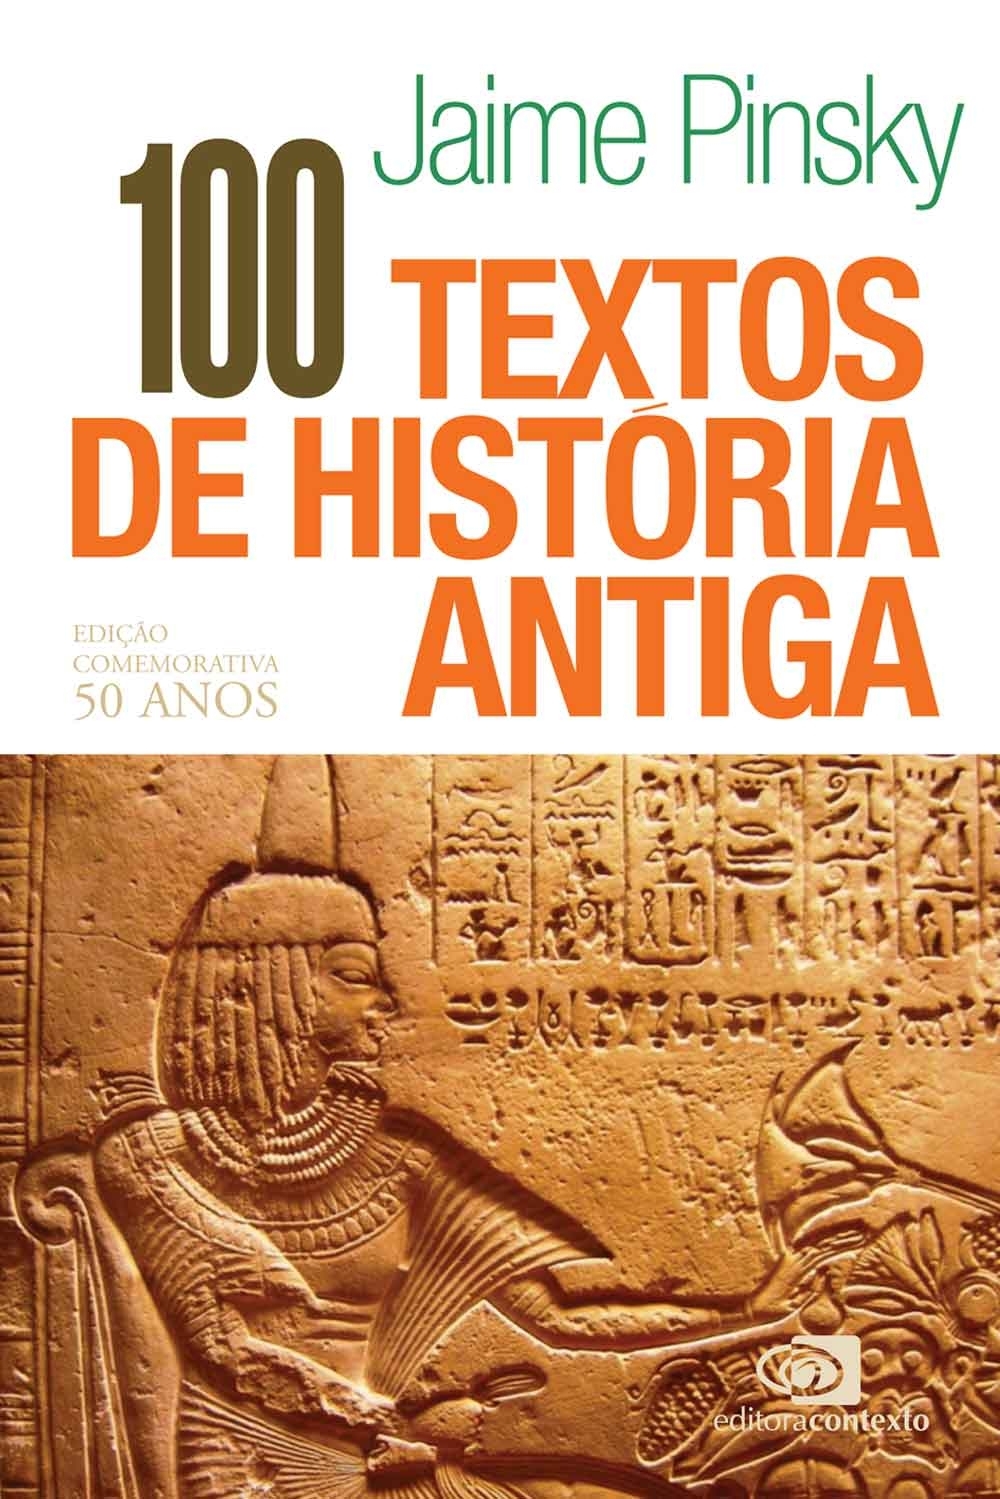 100 textos de história antiga - edição comemorativa